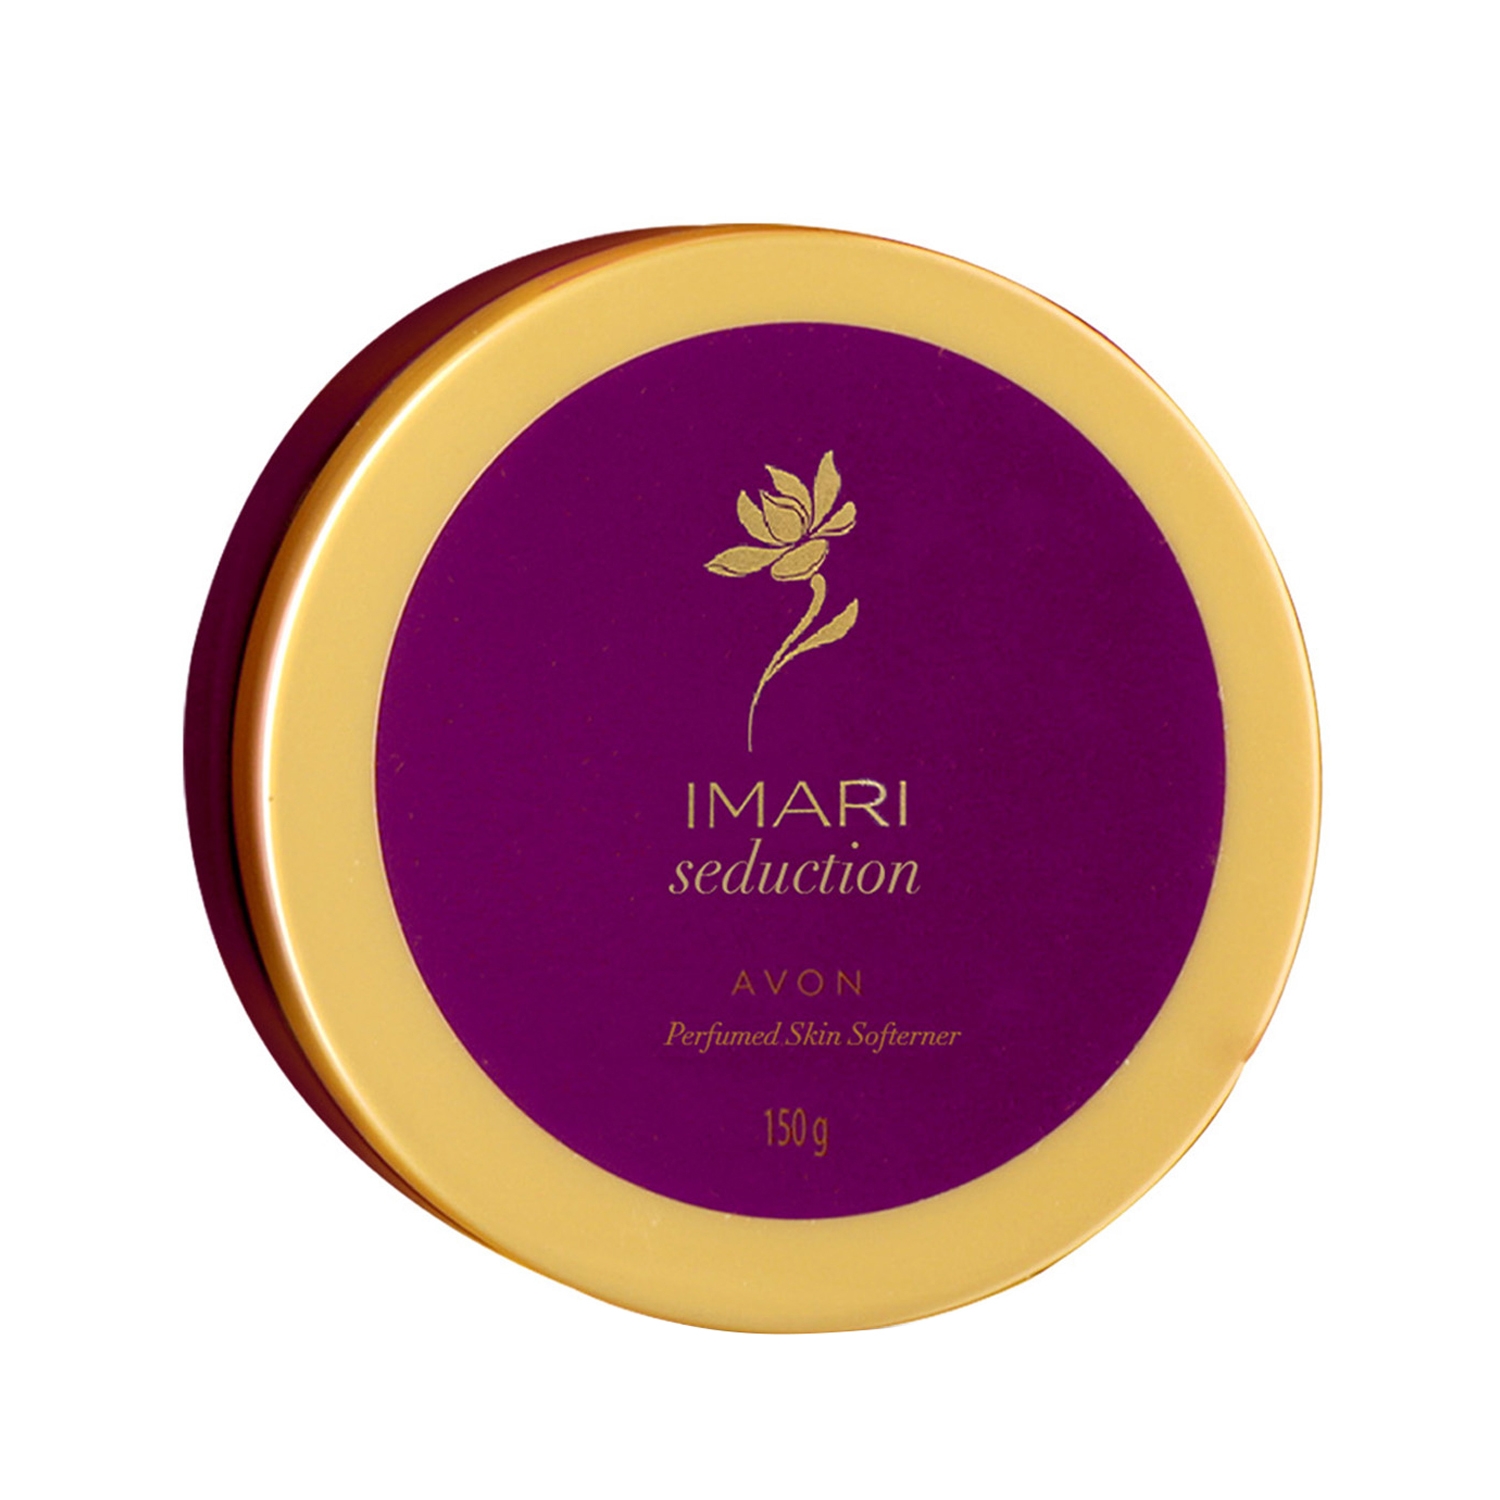 Avon Imari Seduction Perfumed Skin Softener Cream (150g)